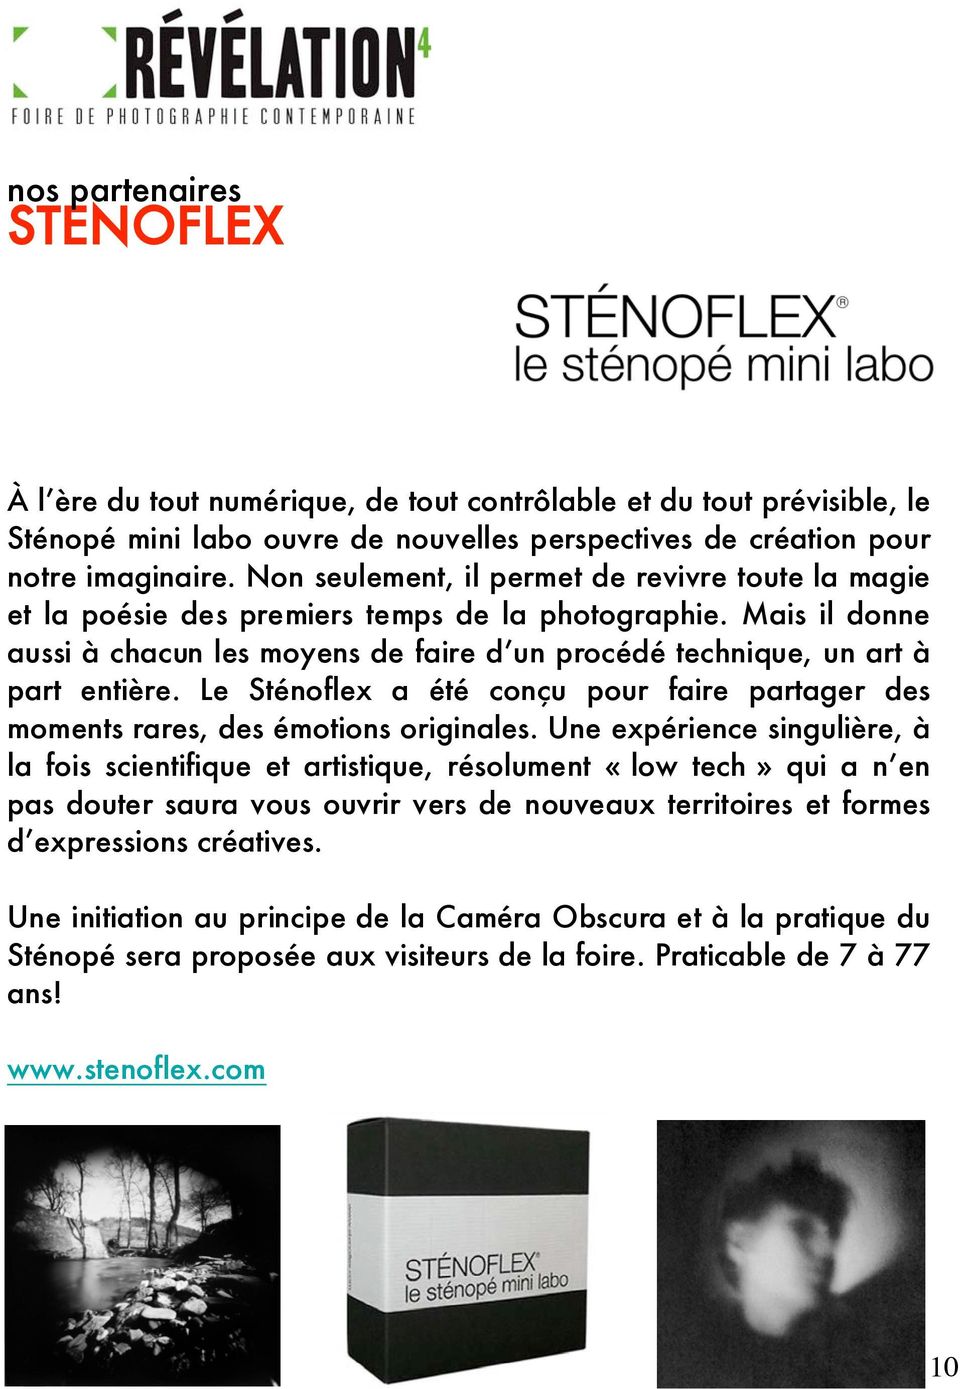 Le Sténoflex a été conçu pour faire partager des moments rares, des émotions originales.